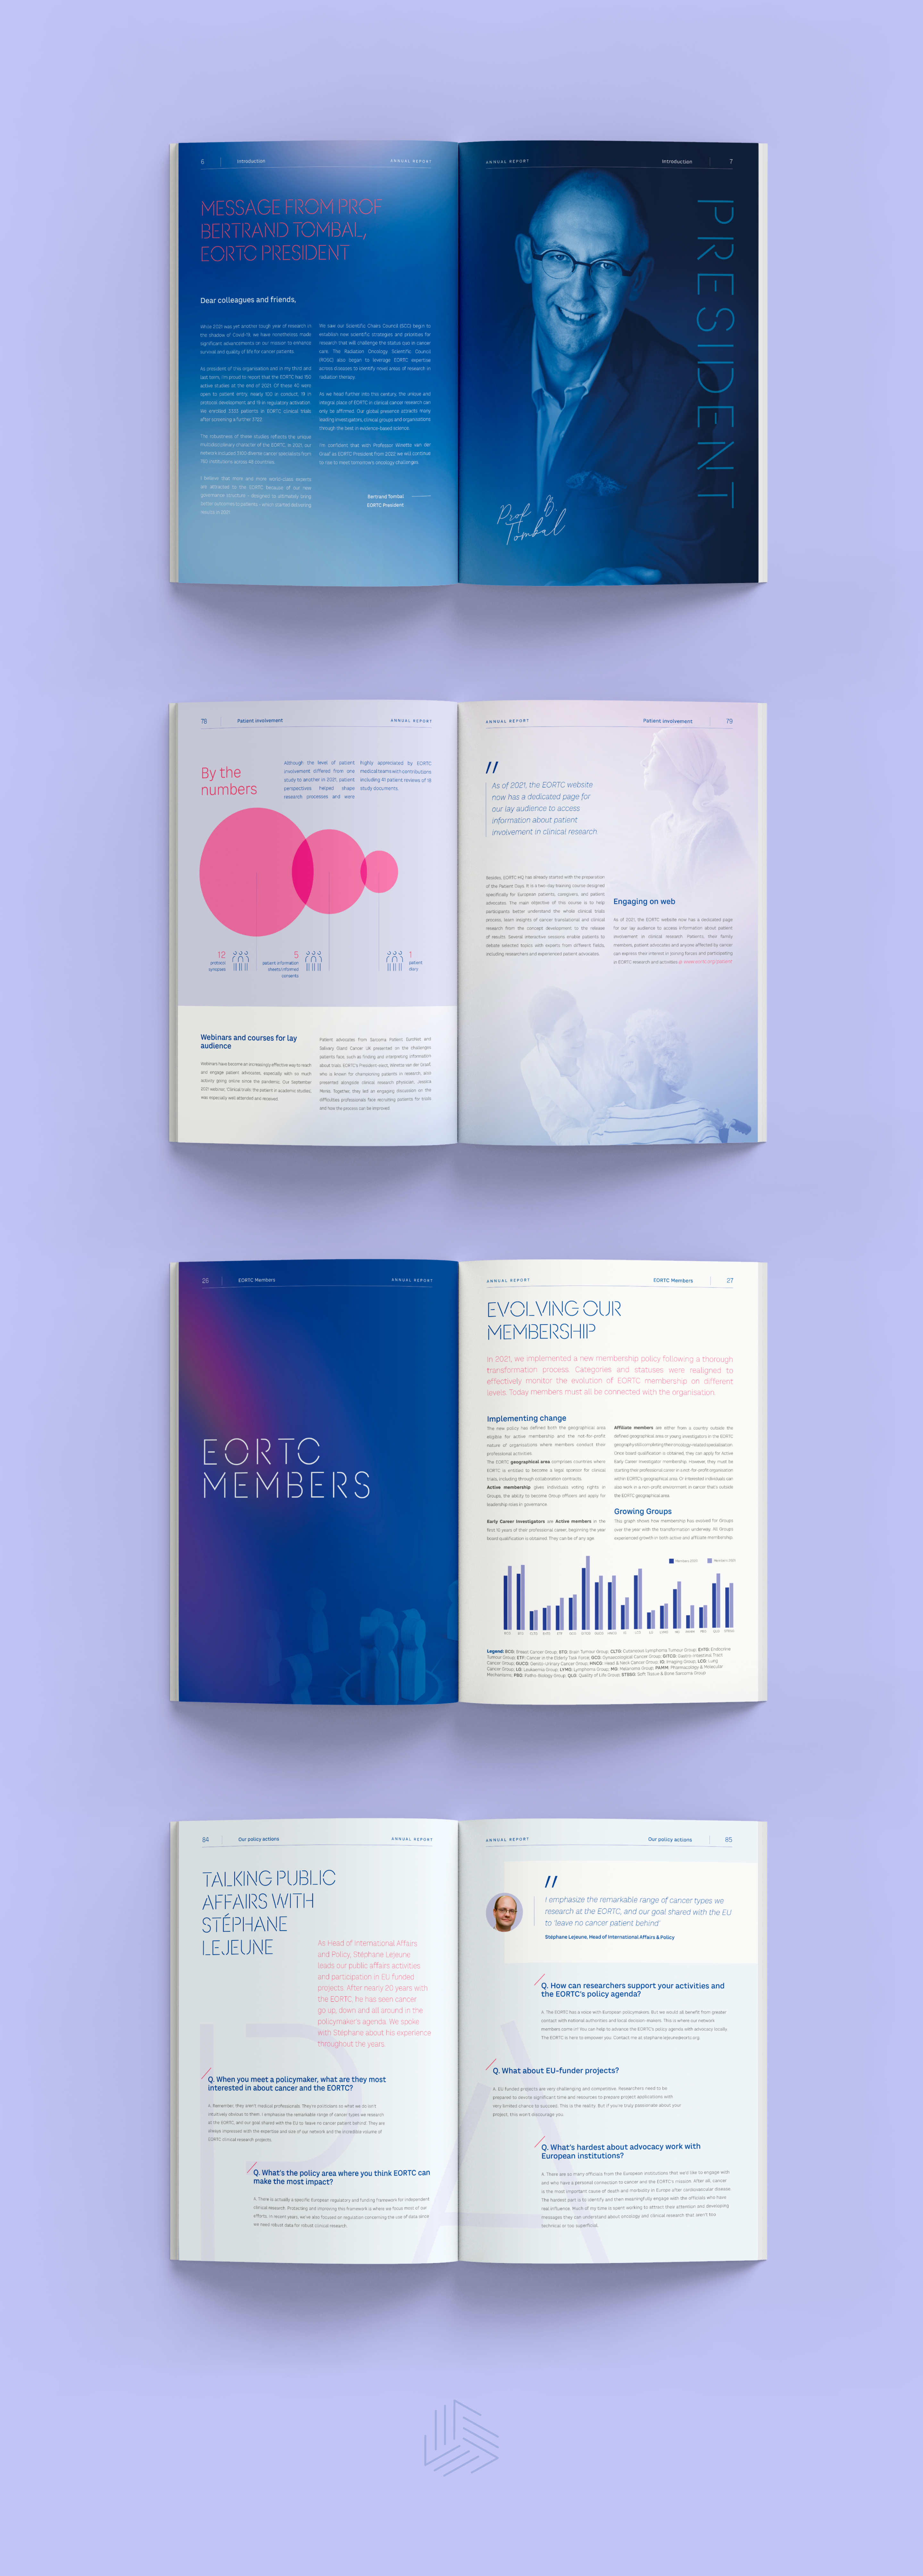 Quelques exemples d'infographies et de pages pour le Rapport Annuel d'EORTC par Atelier Design, agence de communication créative Bruxelles